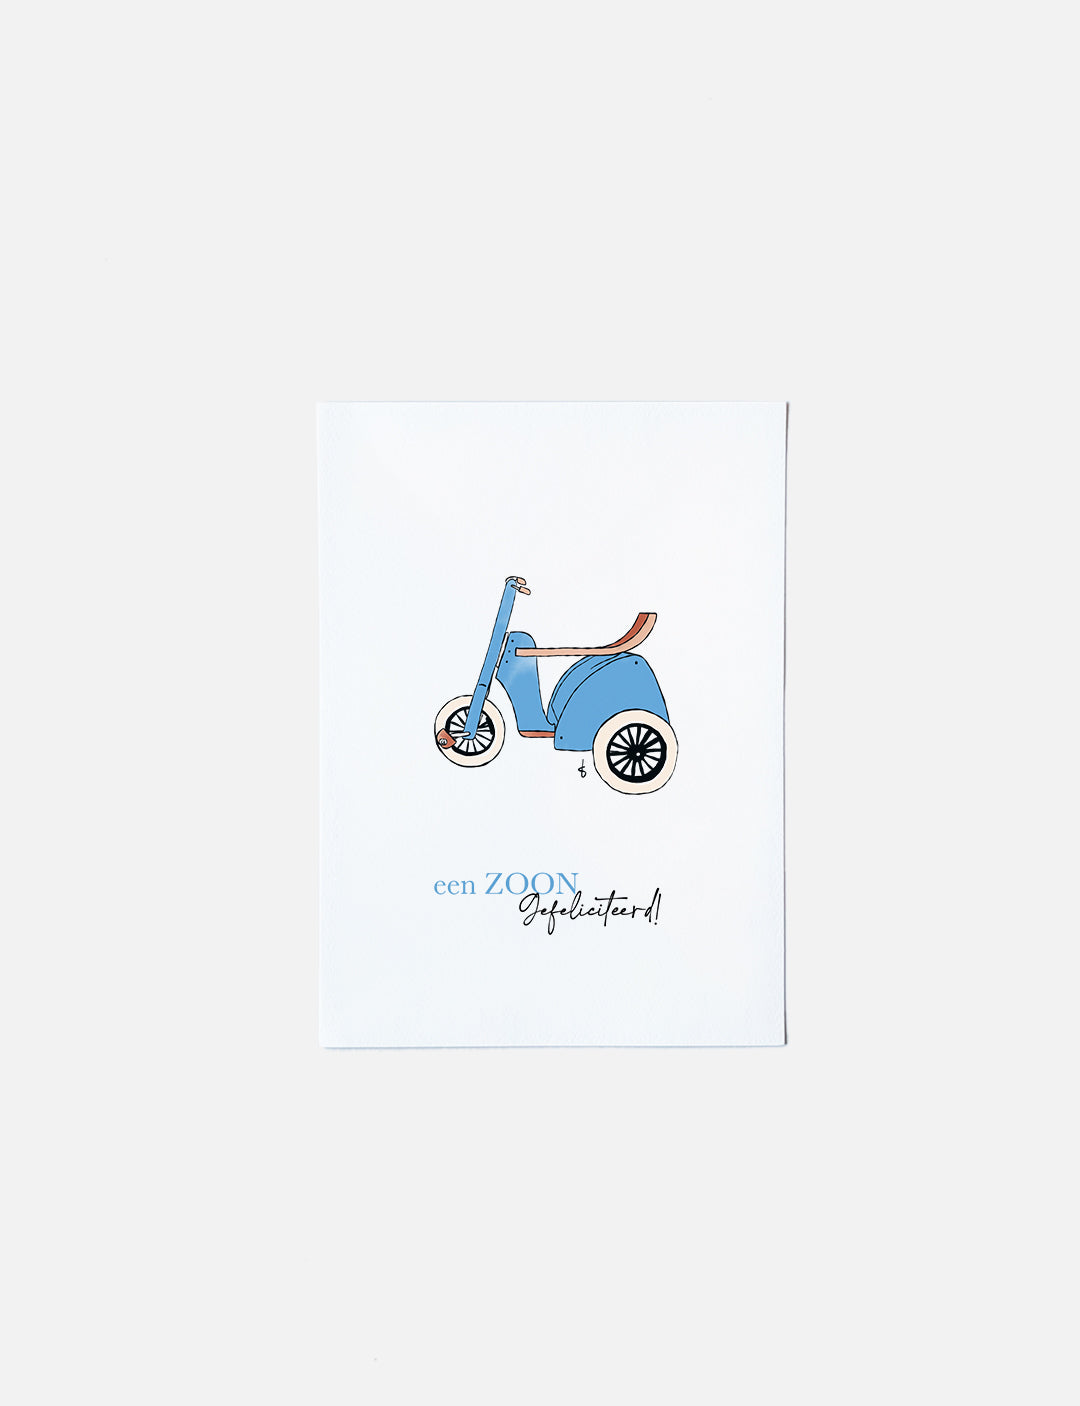 Deze felicitatiekaart op A6 formaat heeft een handgetekende illustratie van een schattige blauwe driewieler en de tekst: een Zoon Gefeliciteerd! Deze unieke kaarten zijn ook in roze voor een meisje verkrijgbaar. Bekijk onze webshop voor meer originele kaarten.